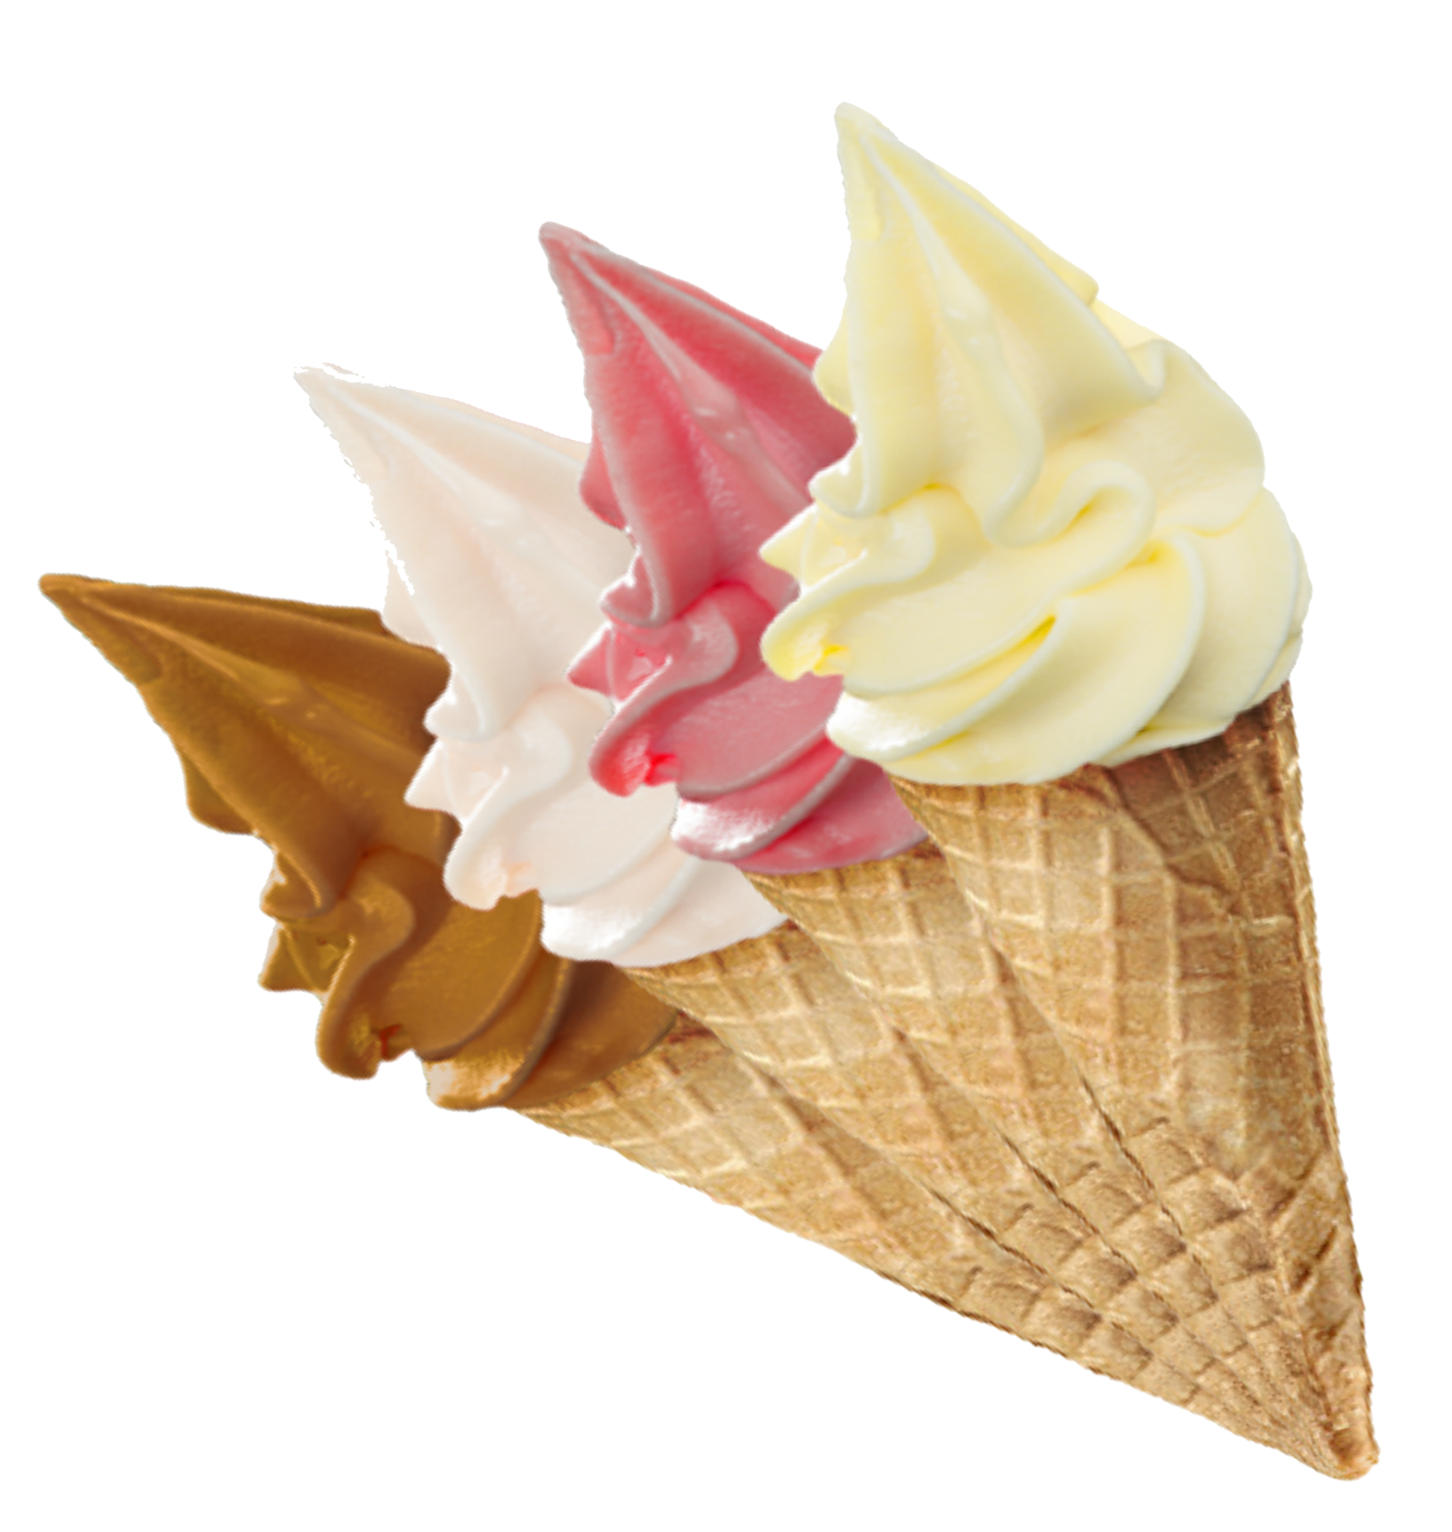 عکس دور بریده شده بستنی قیفی چند طعم مختلف 